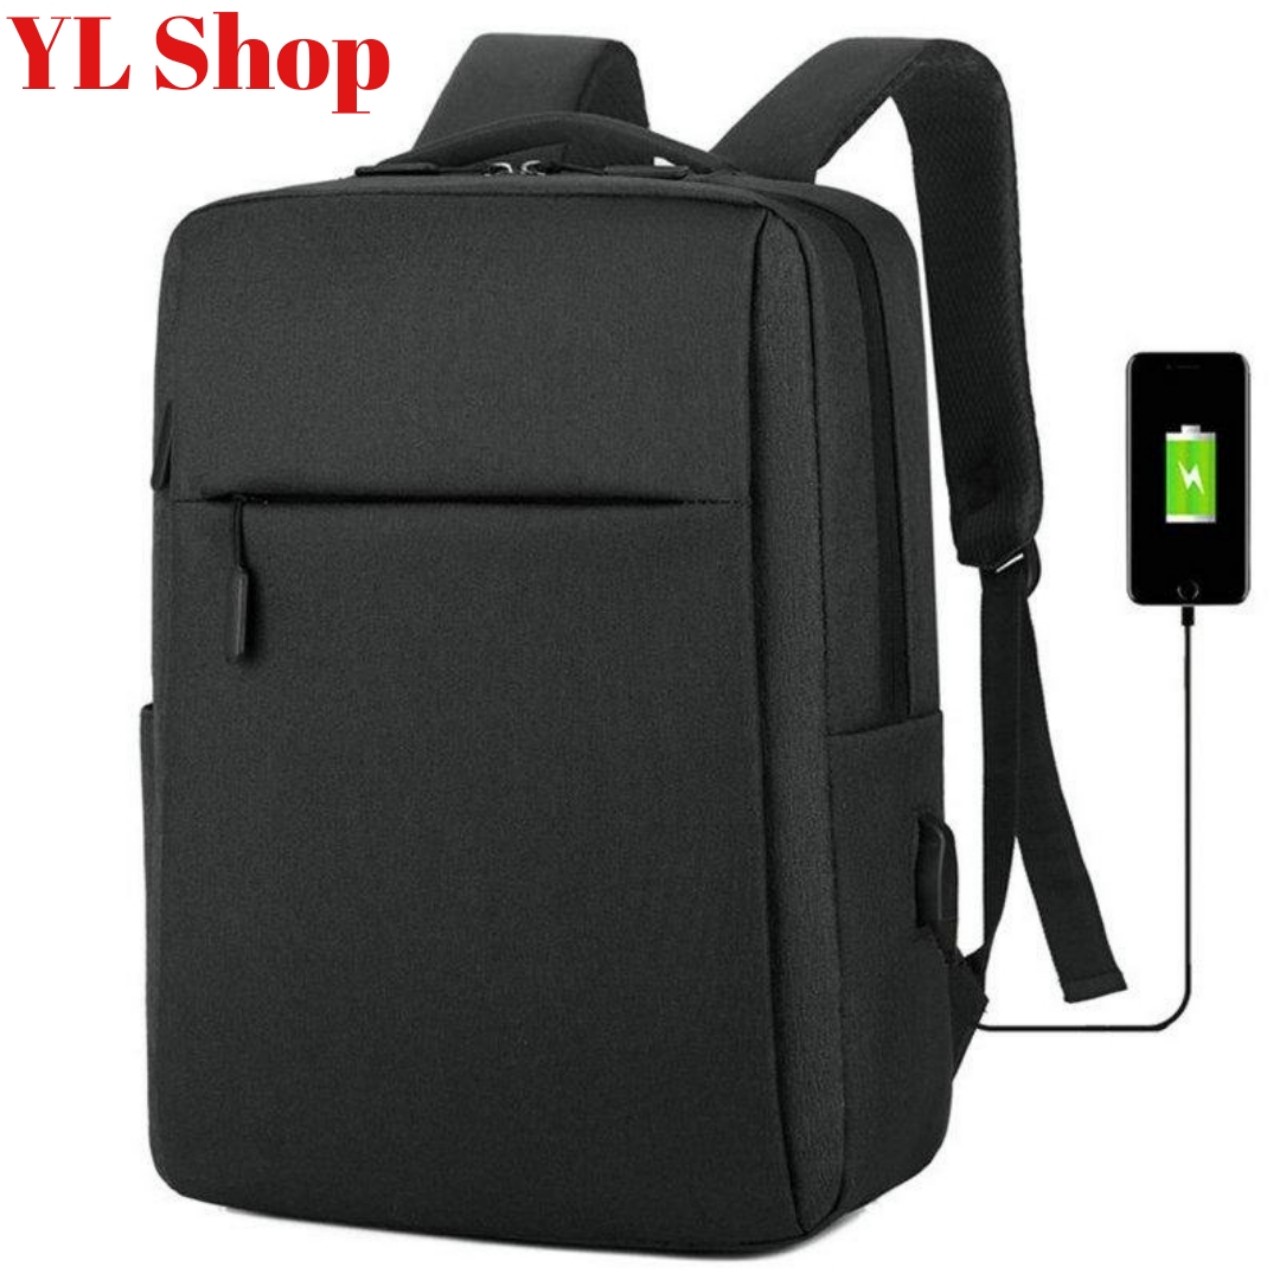 Giảm giá Balo laptop dell essential backpack 15 - es1533p chính hãng - thời  trang bền, đẹp, gọn, nhẹ, nhiều ngăn, rộng rãi - BeeCost